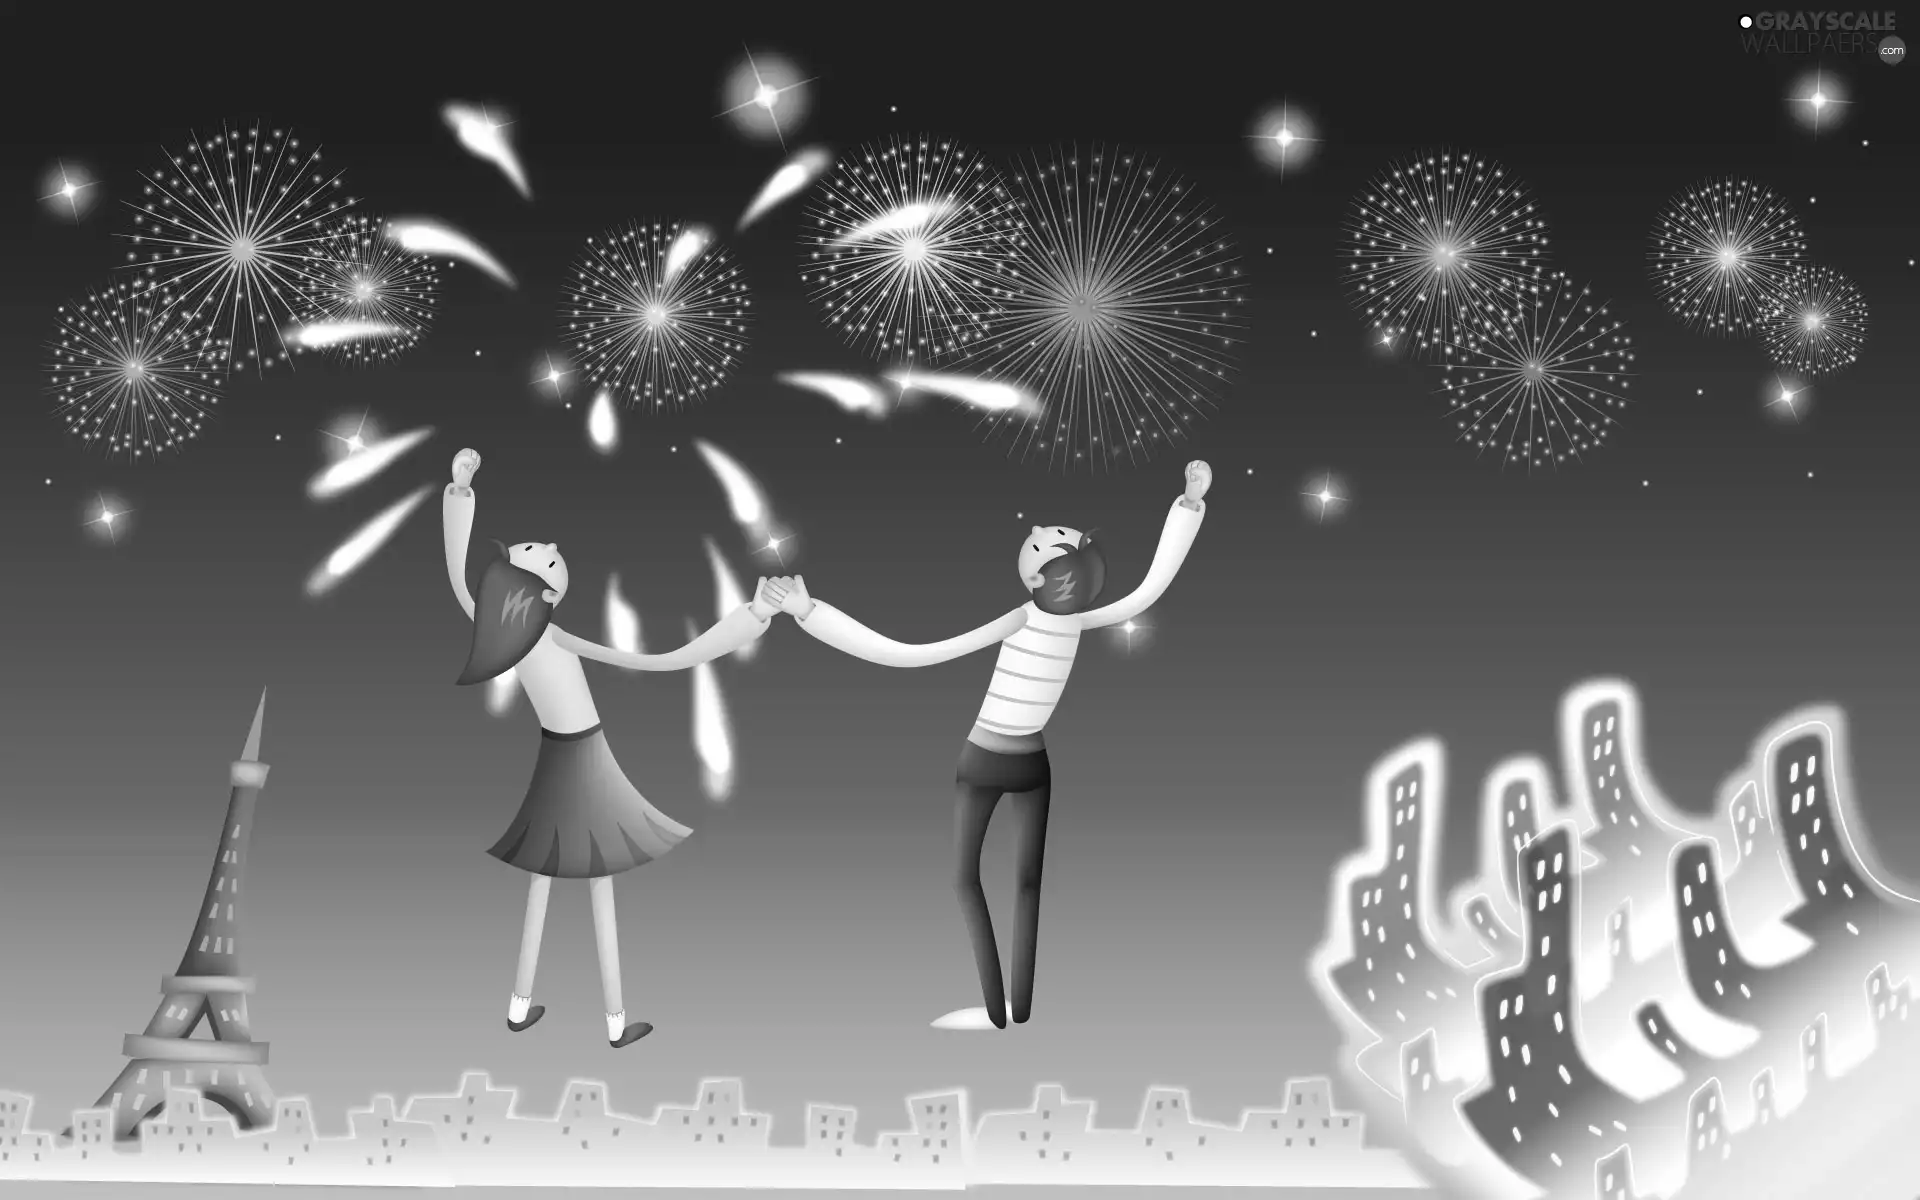 Steam, fireworks, New Year